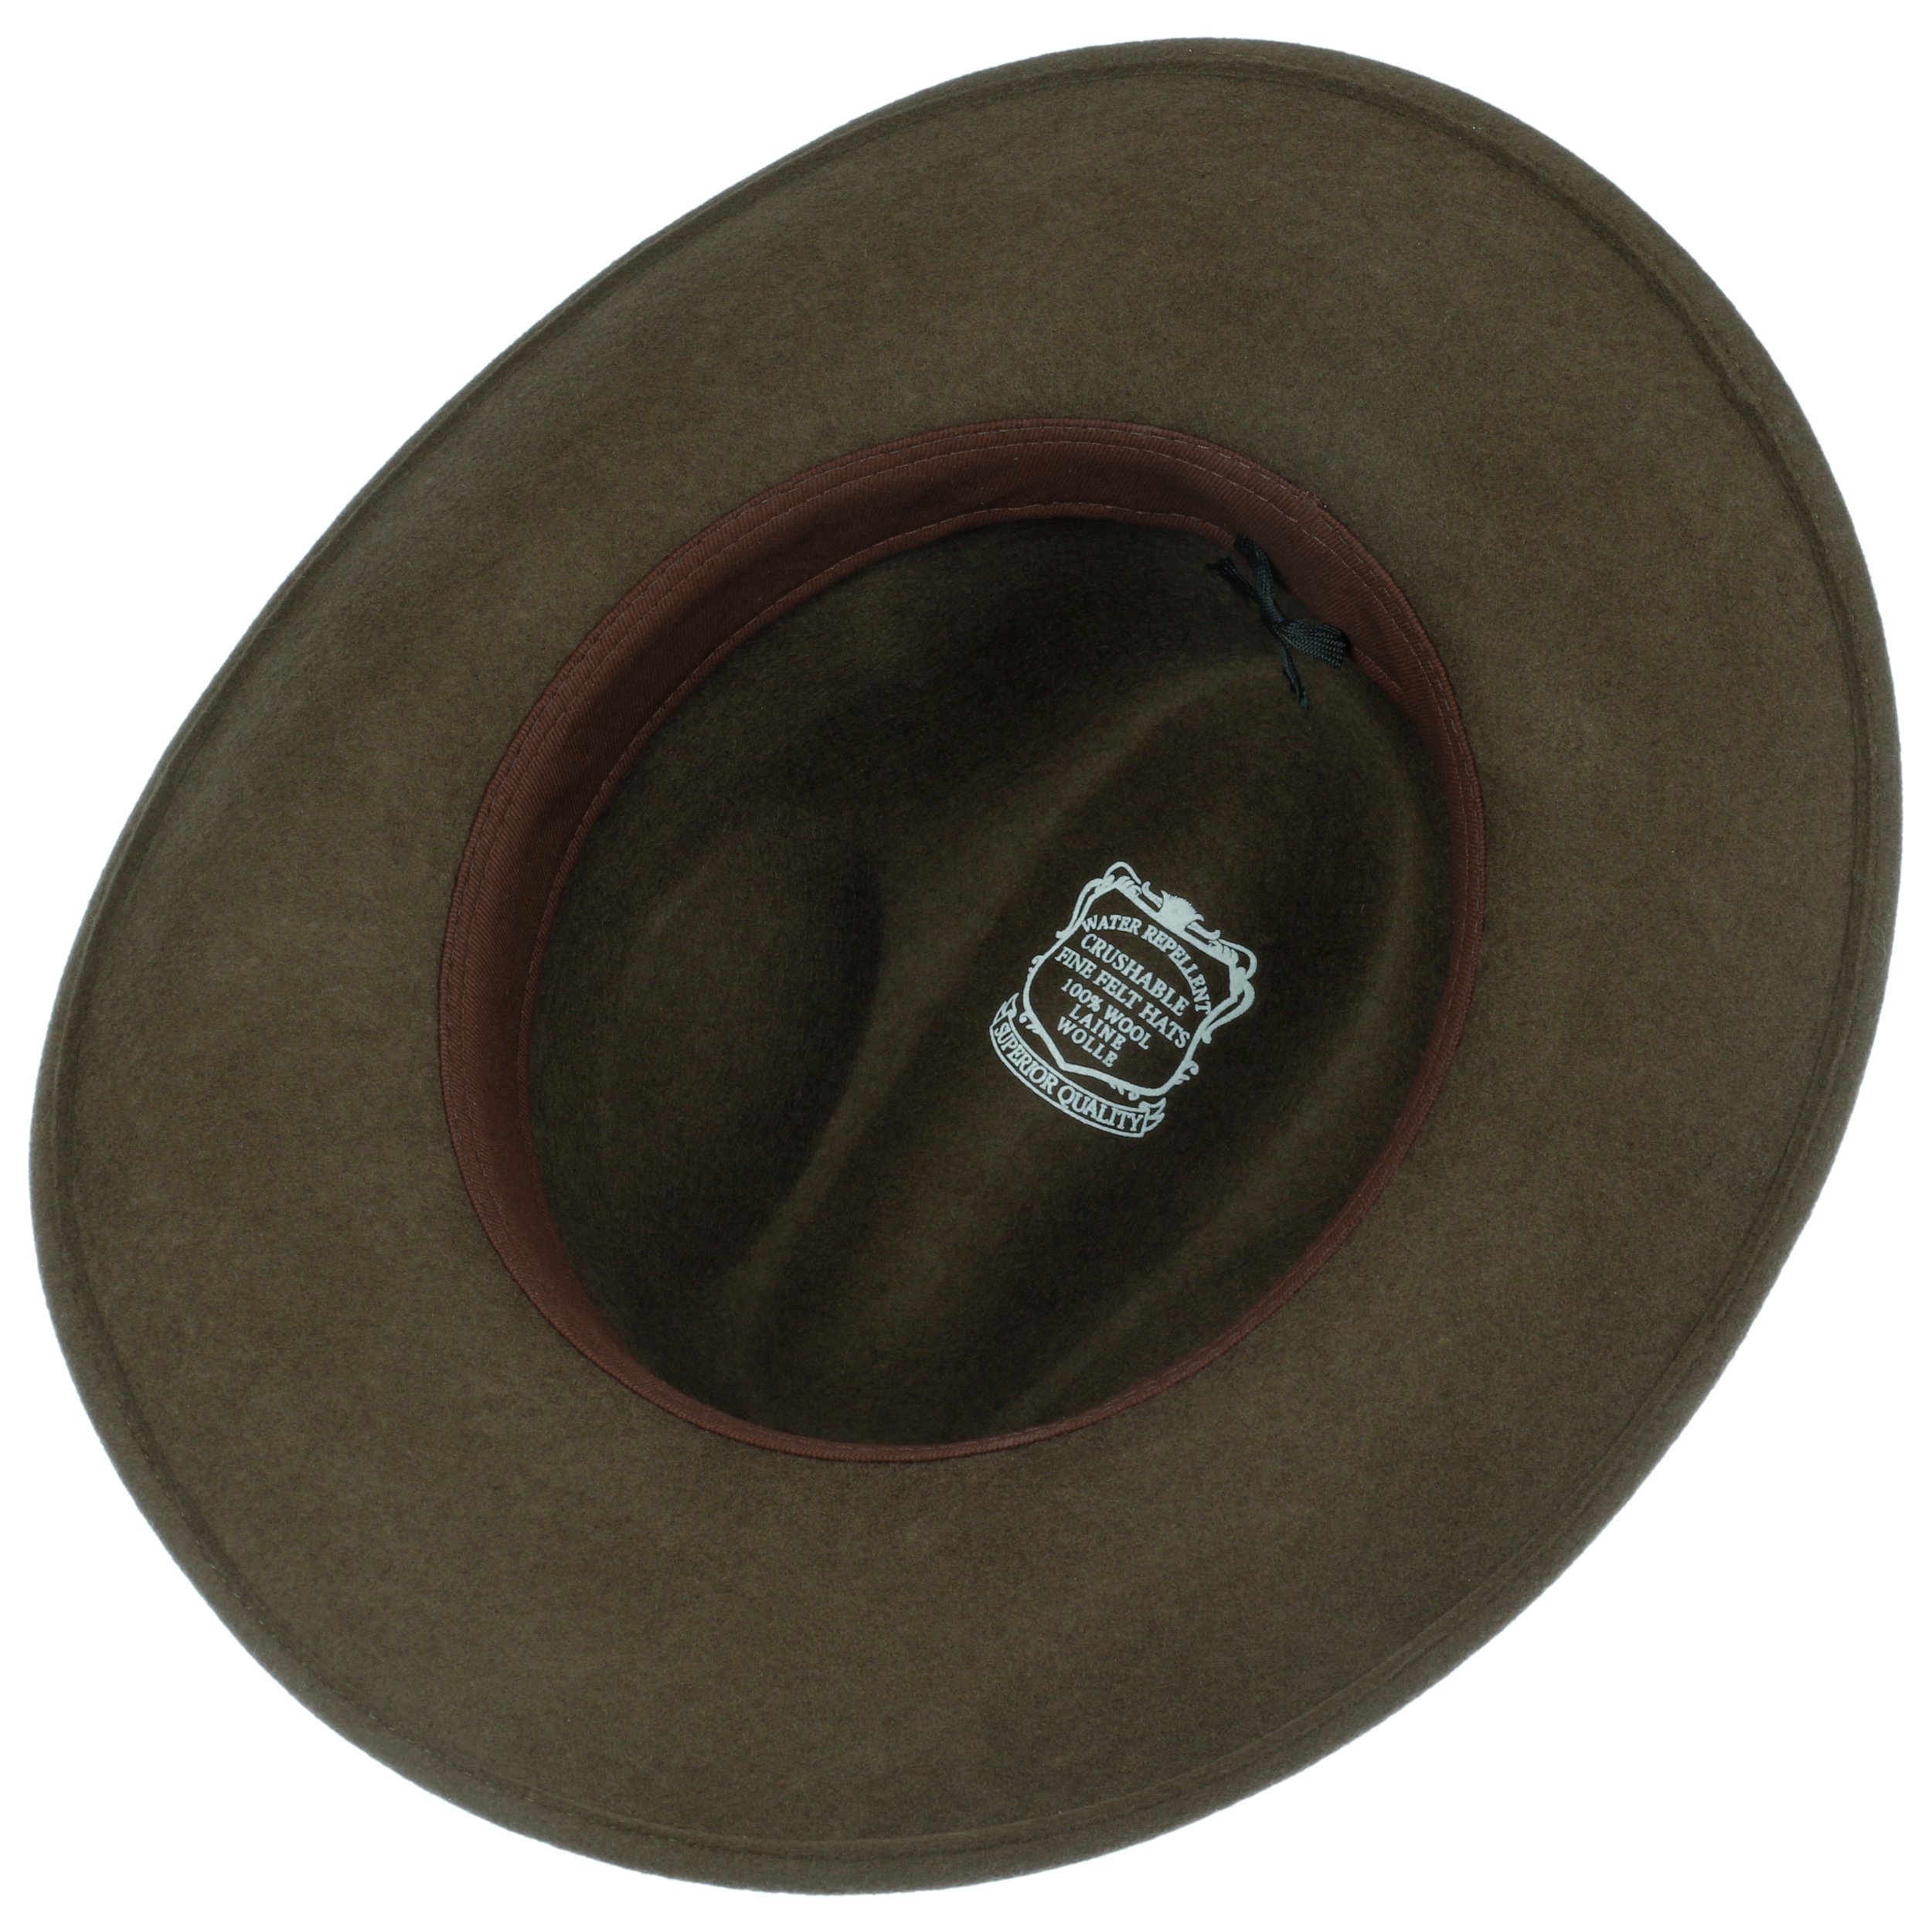 Wasserabweisend und knautschbar Cowboyhut mit Ledergarniturband Made in Italy LIERYS Tancaro Wool Westernhut Damen/Herren aus 100% Wolle Filzhut Herbst/Winter